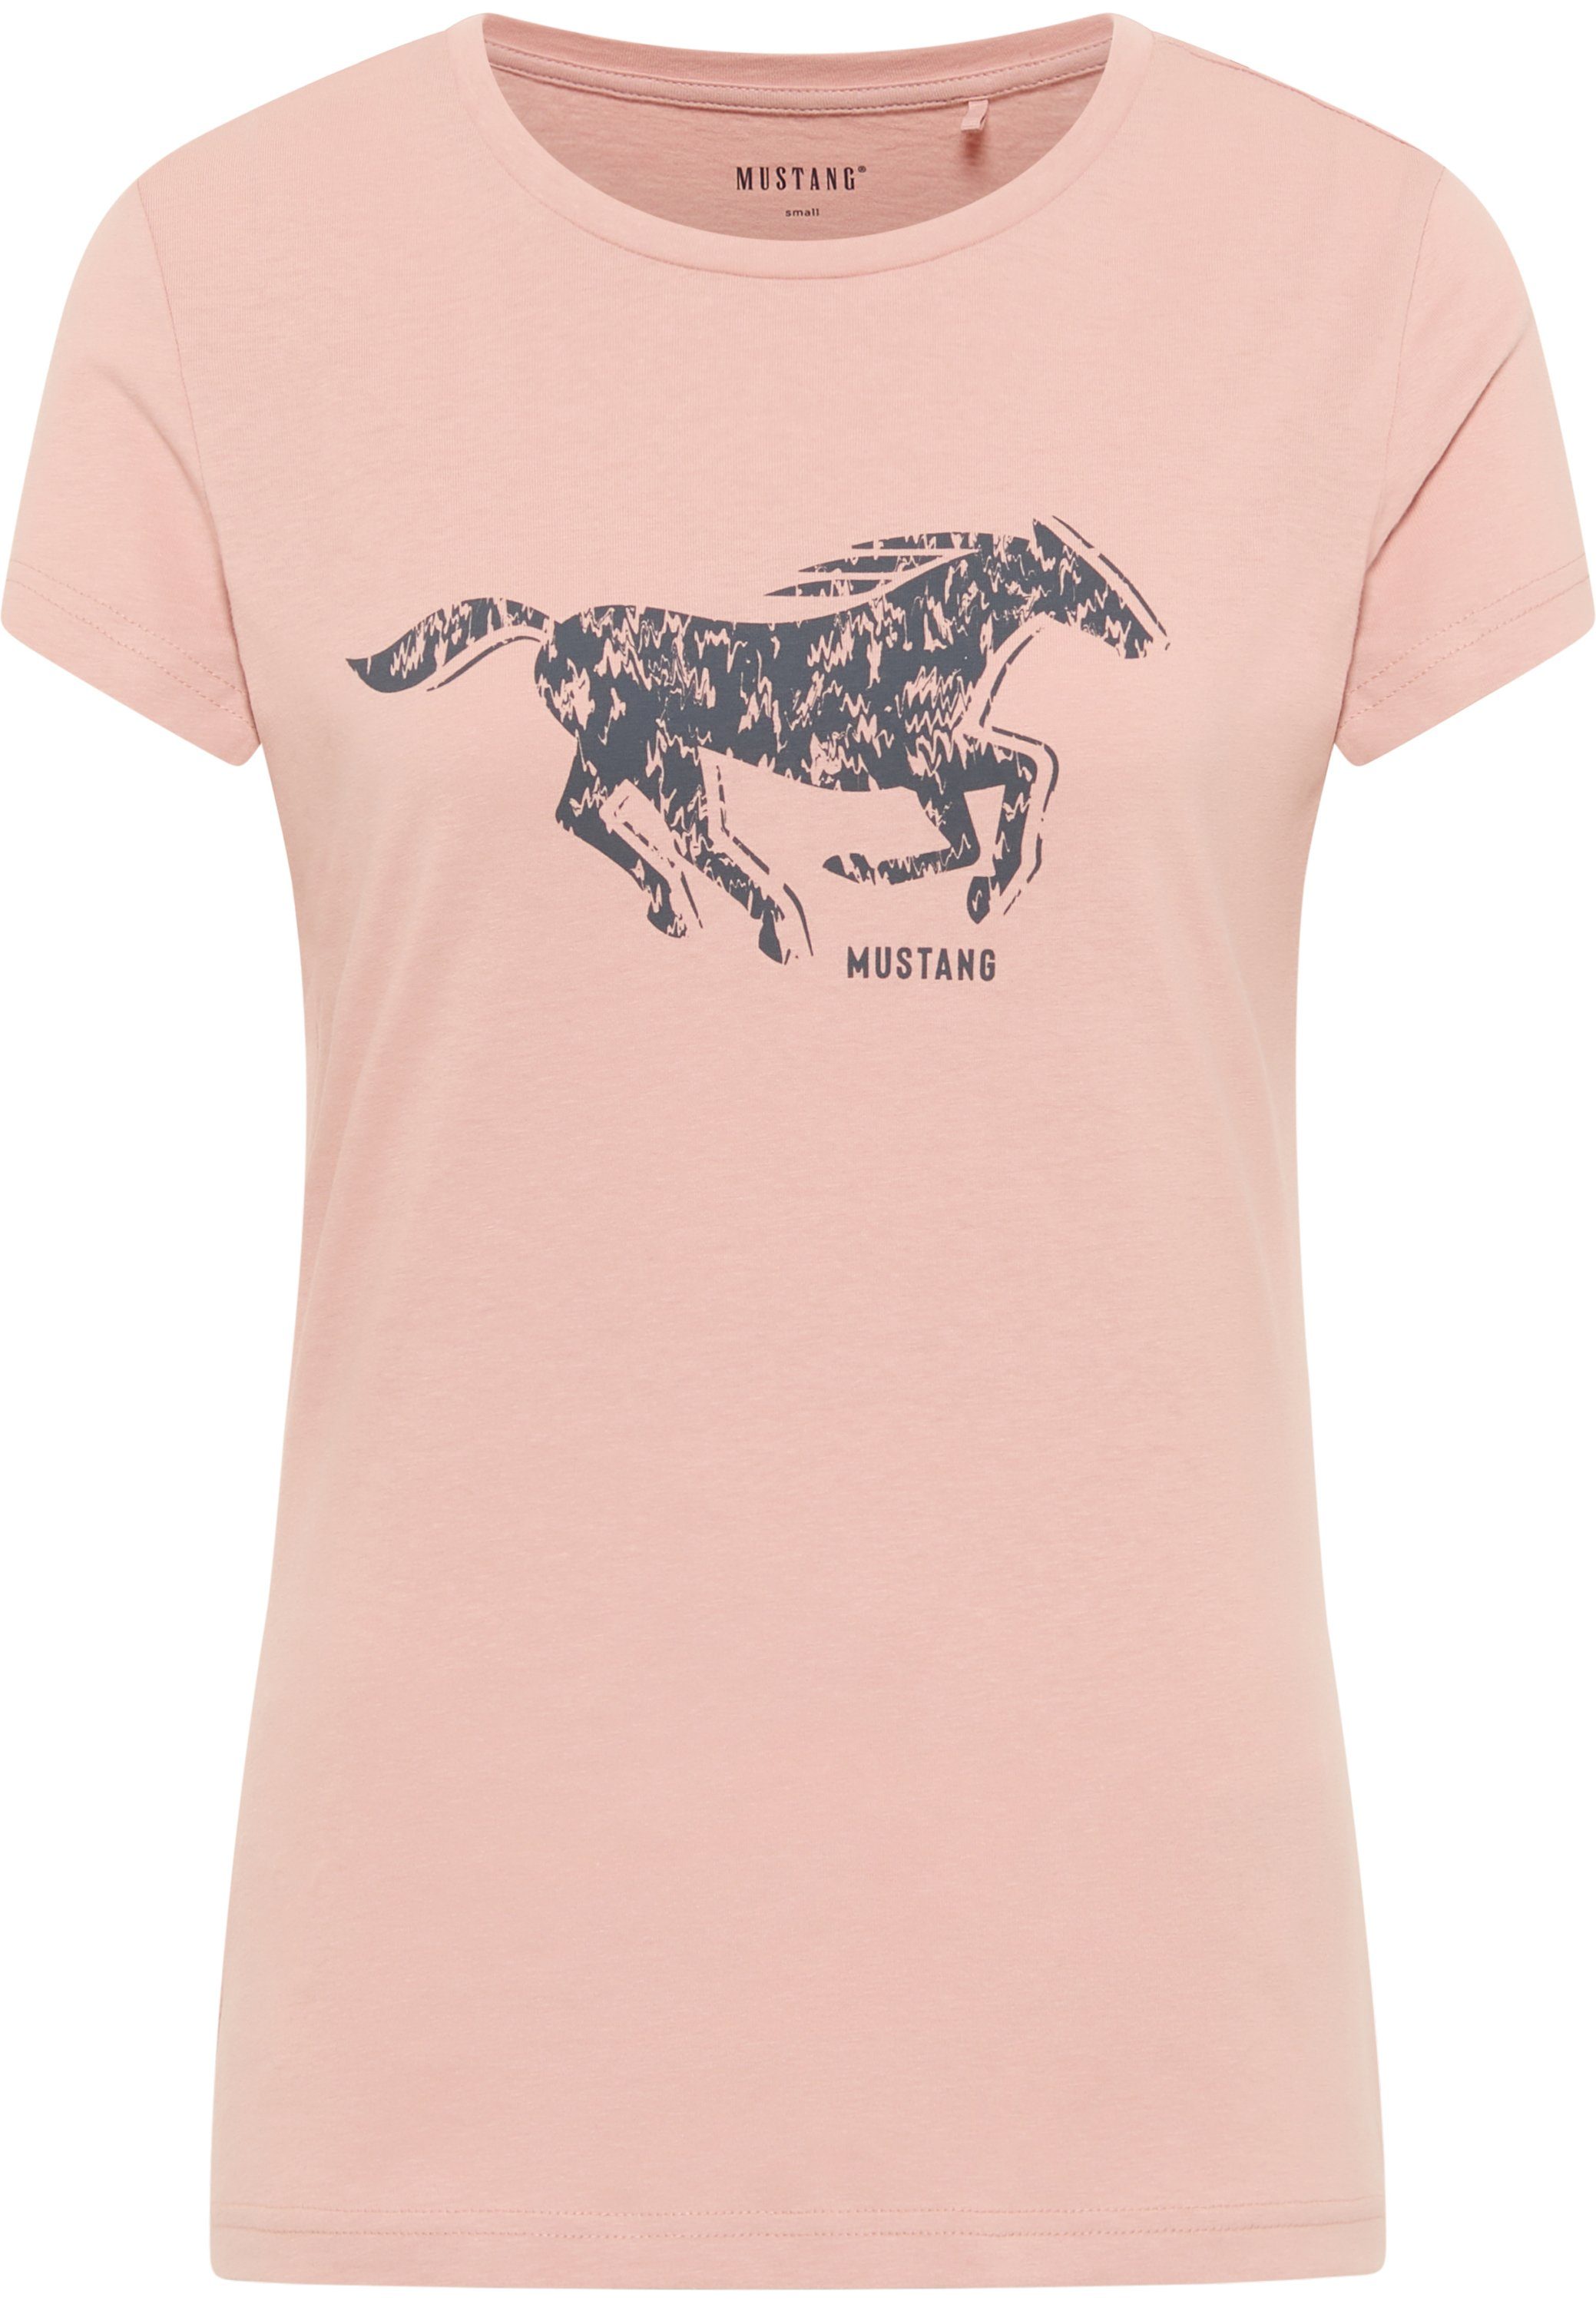 MUSTANG Kurzarmshirt Mustang T-Shirt Print-Shirt hellrosa